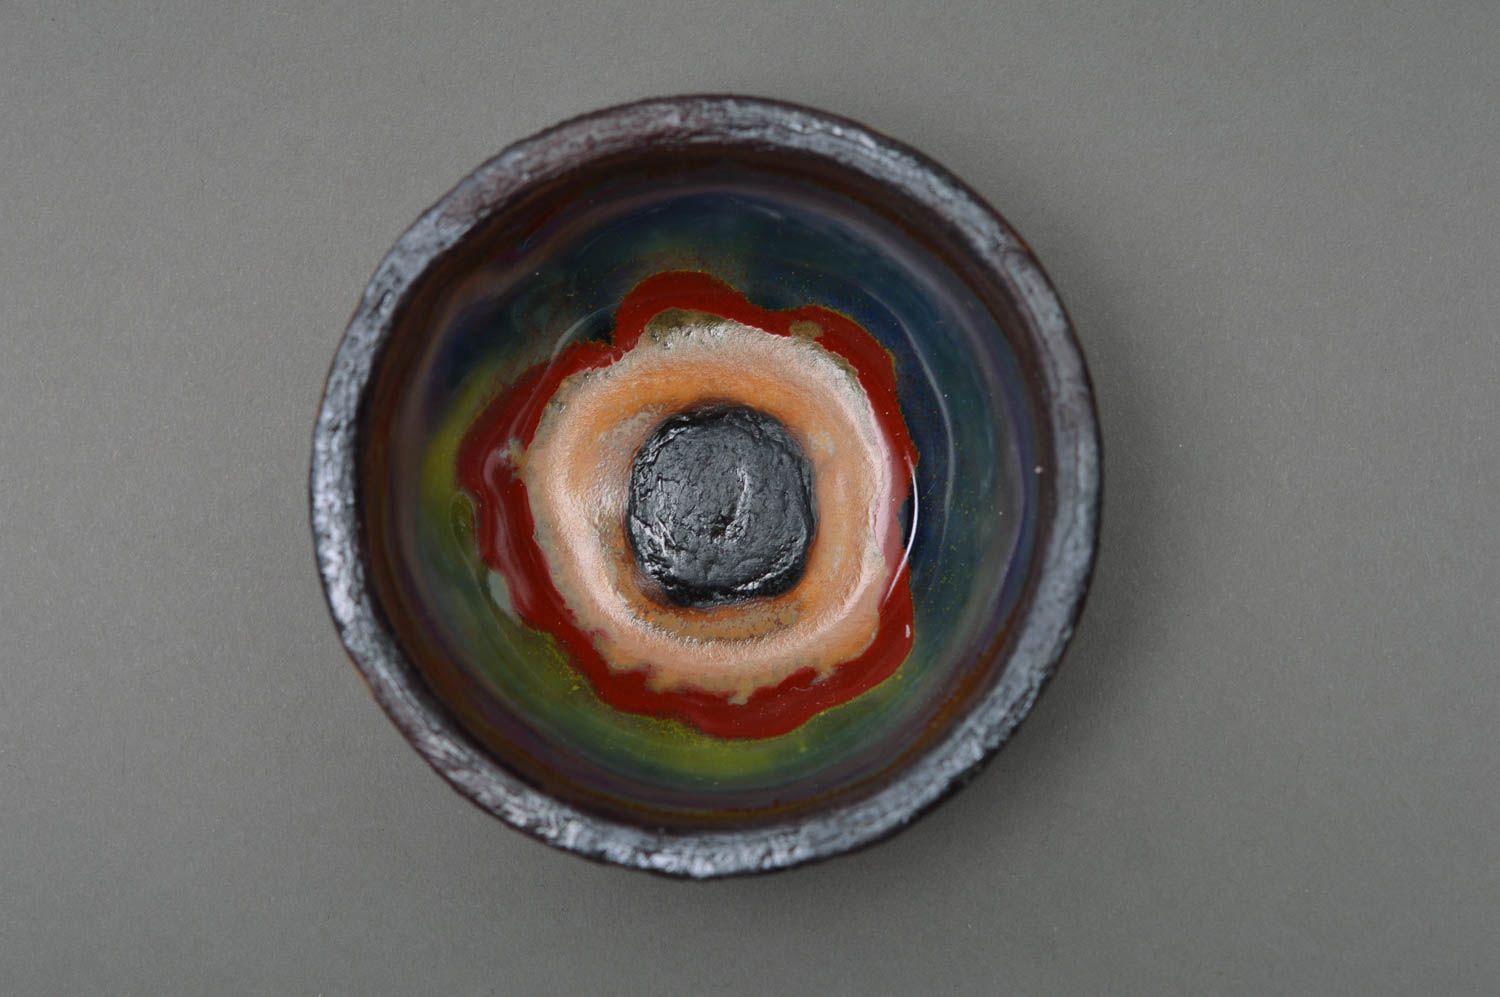 Belle saucière porcelaine ronde faite main peinte de glaçure colorée vaisselle photo 1